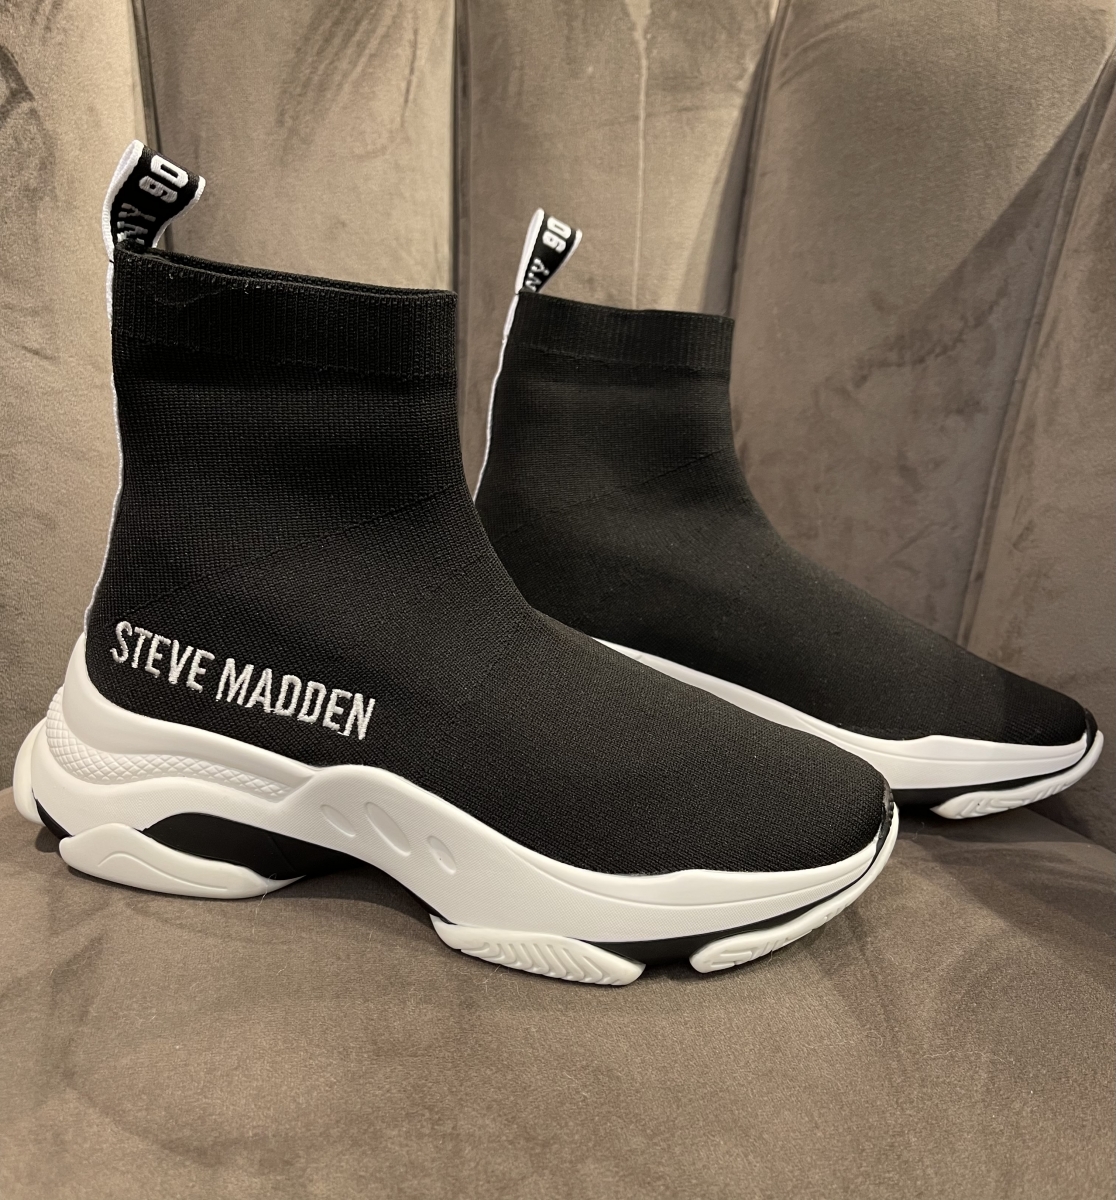 STEVE MADDEN MASTER BLACK/WHITE SNEAKERS